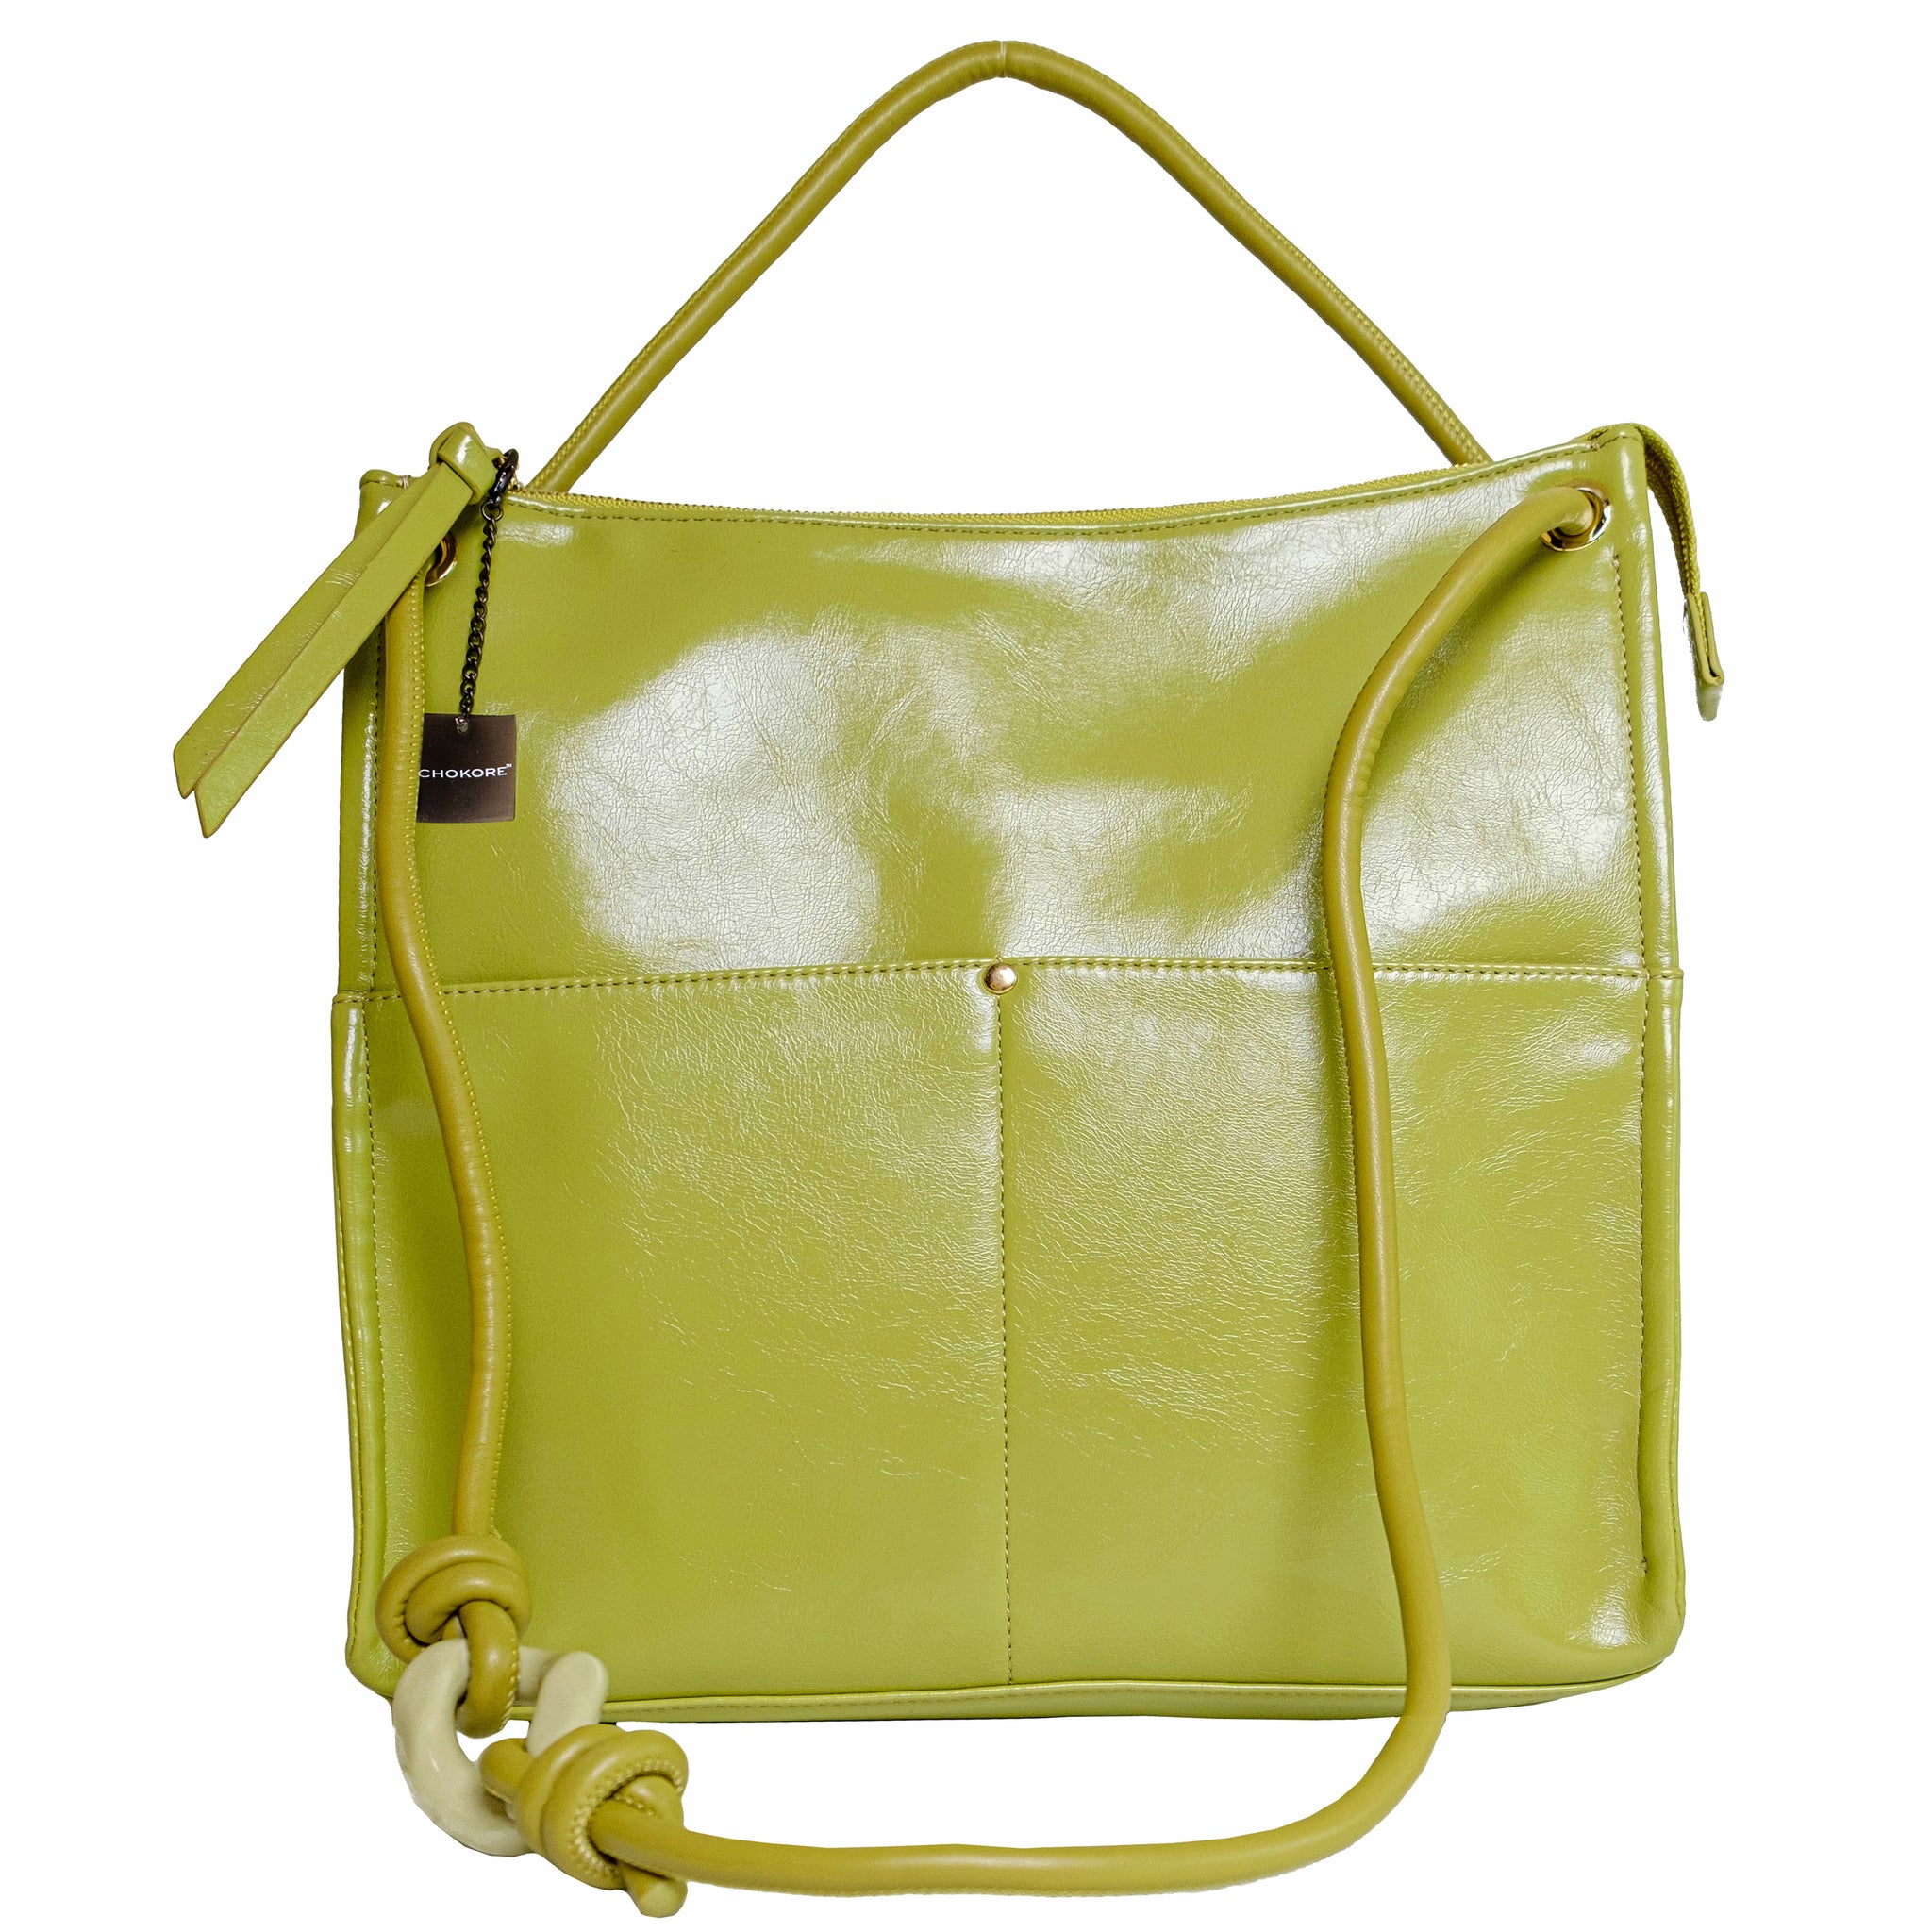 Chokore Olive Green Tote Bag